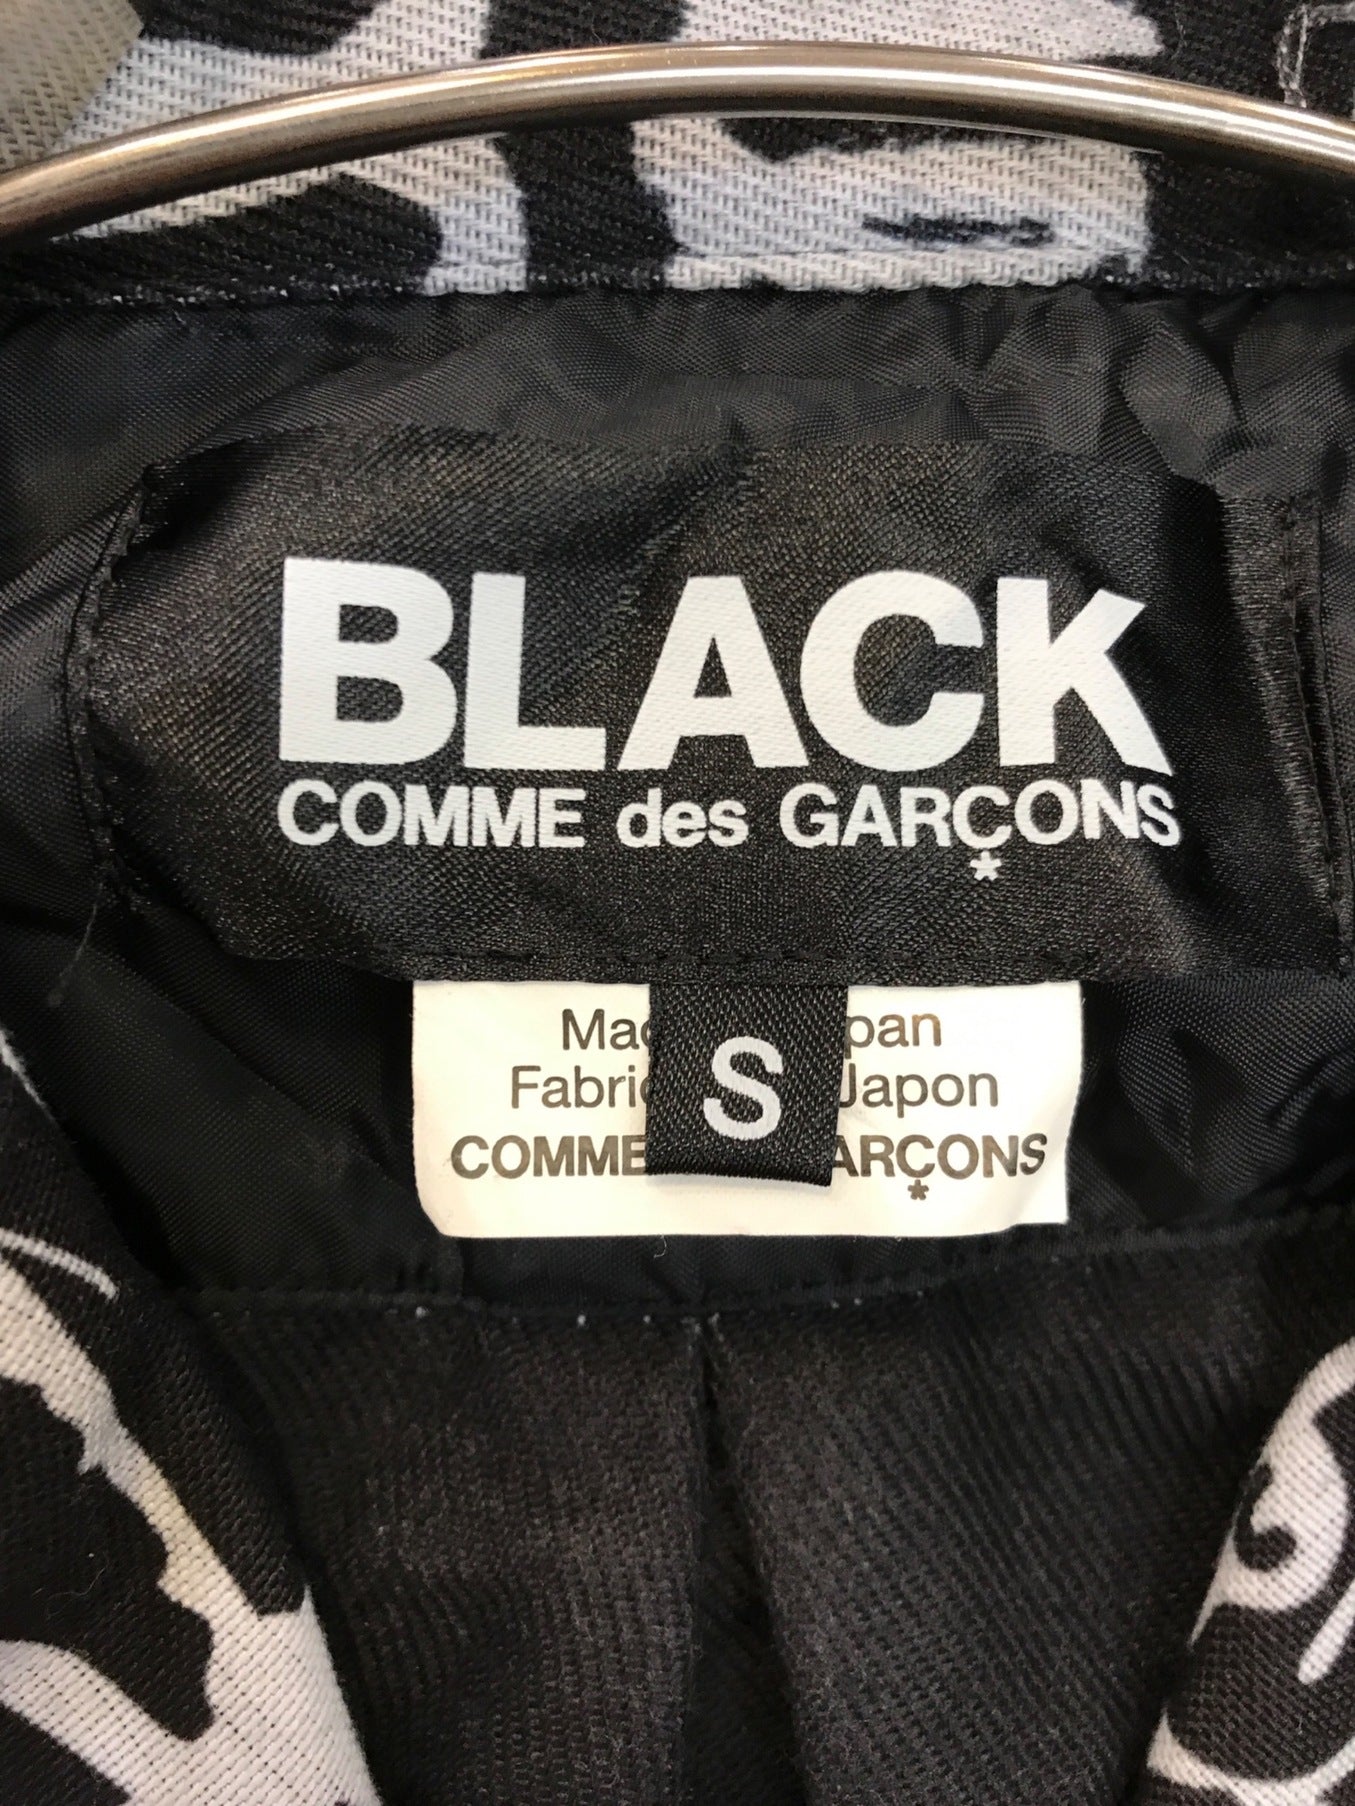 Black Comme des garcons แจ็คเก็ตยาวพร้อมลวดลายทาสีทั้งหมด 1D-J013